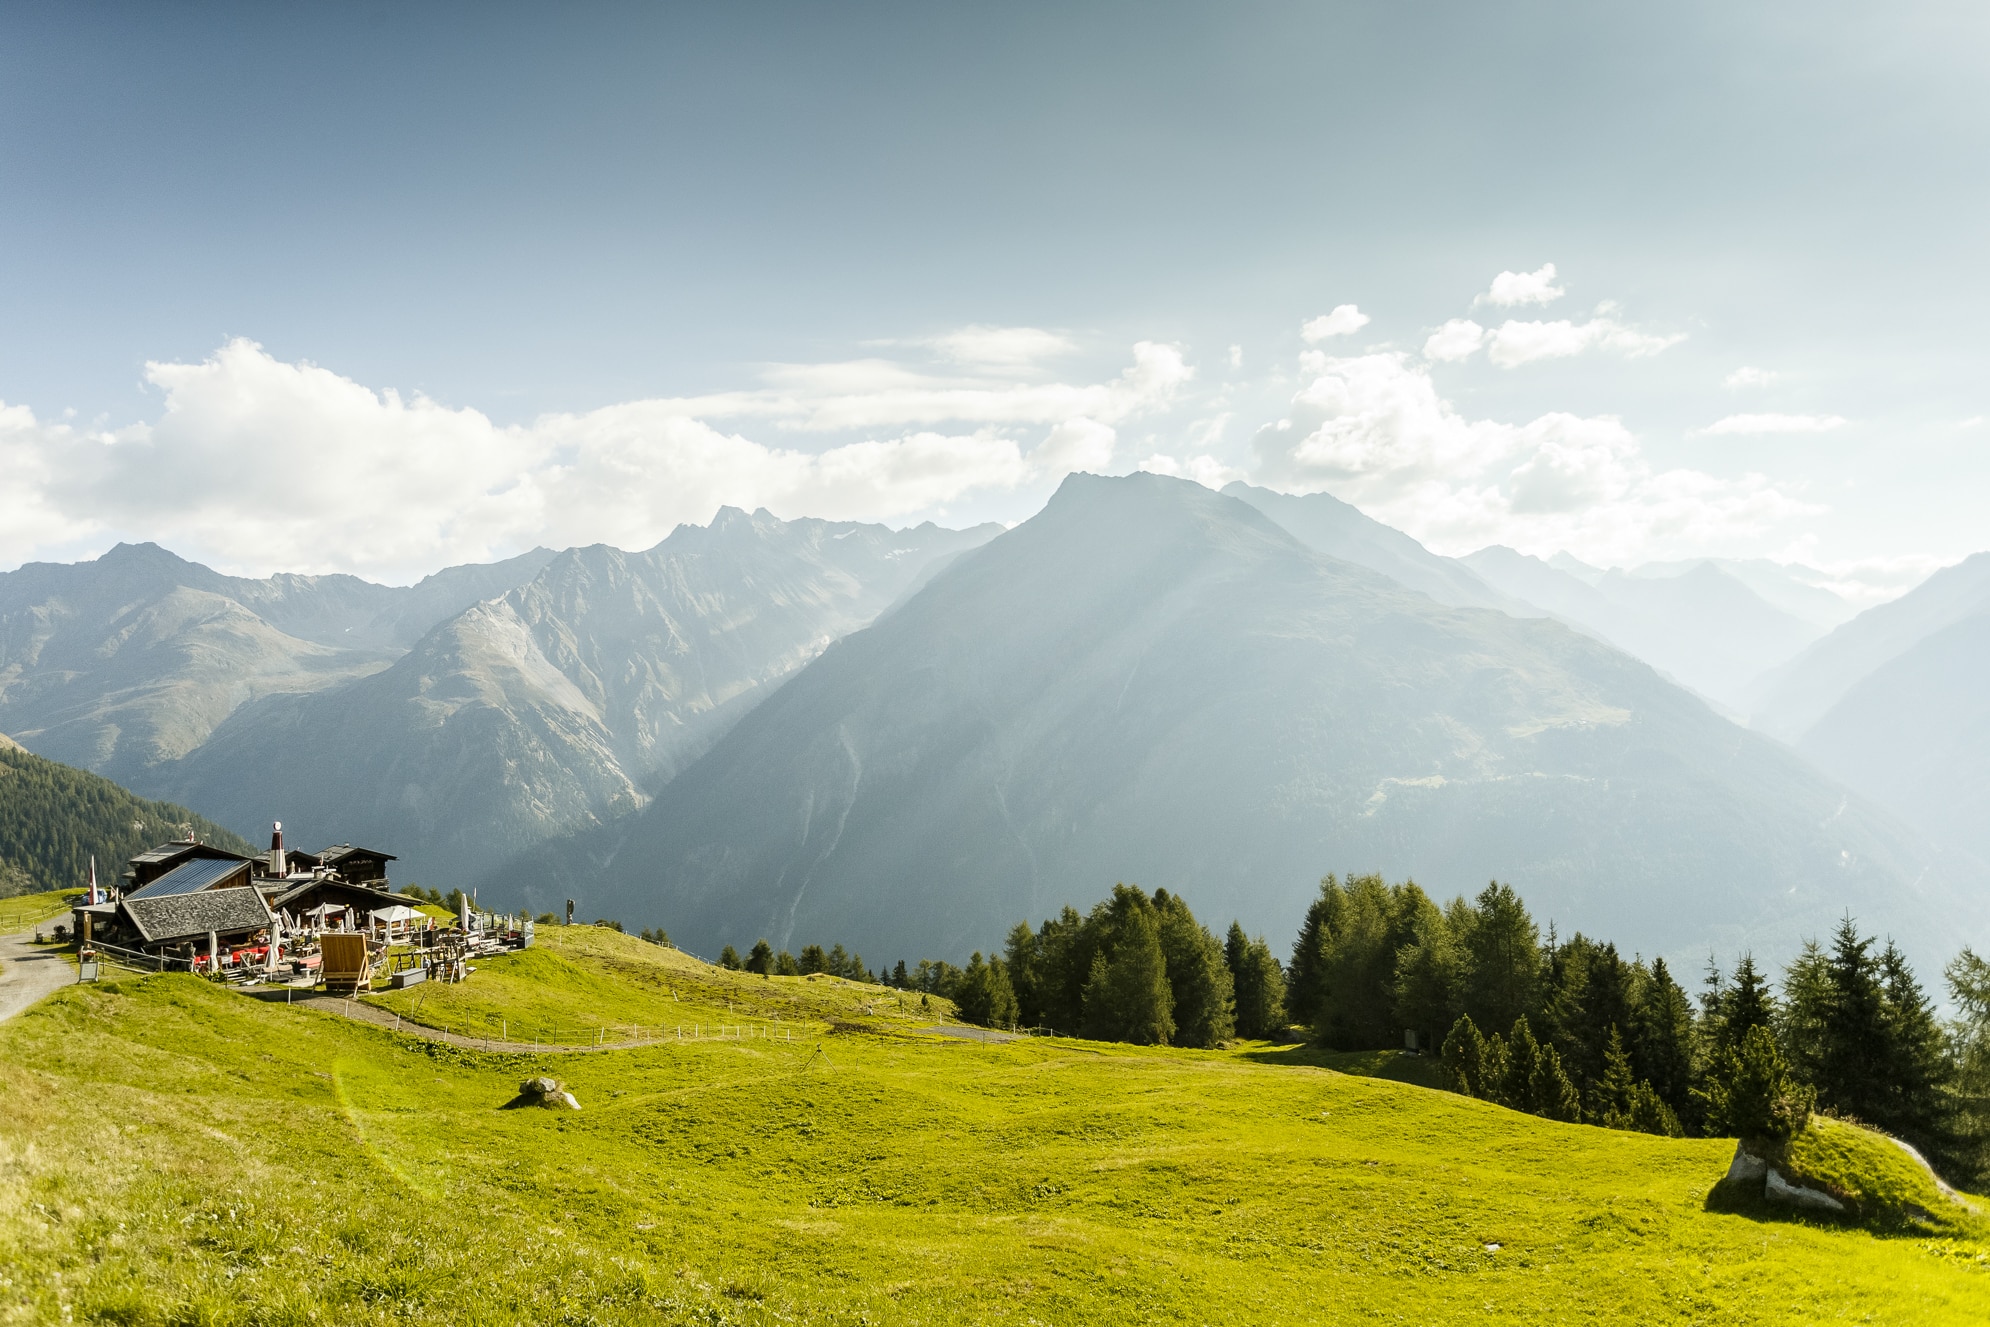 Ab dem 15. Mai dürfen österreichische Hütten, wie die Gampe Thaya in den Ötztaler Alpen, wieder ihre Pforten öffnen